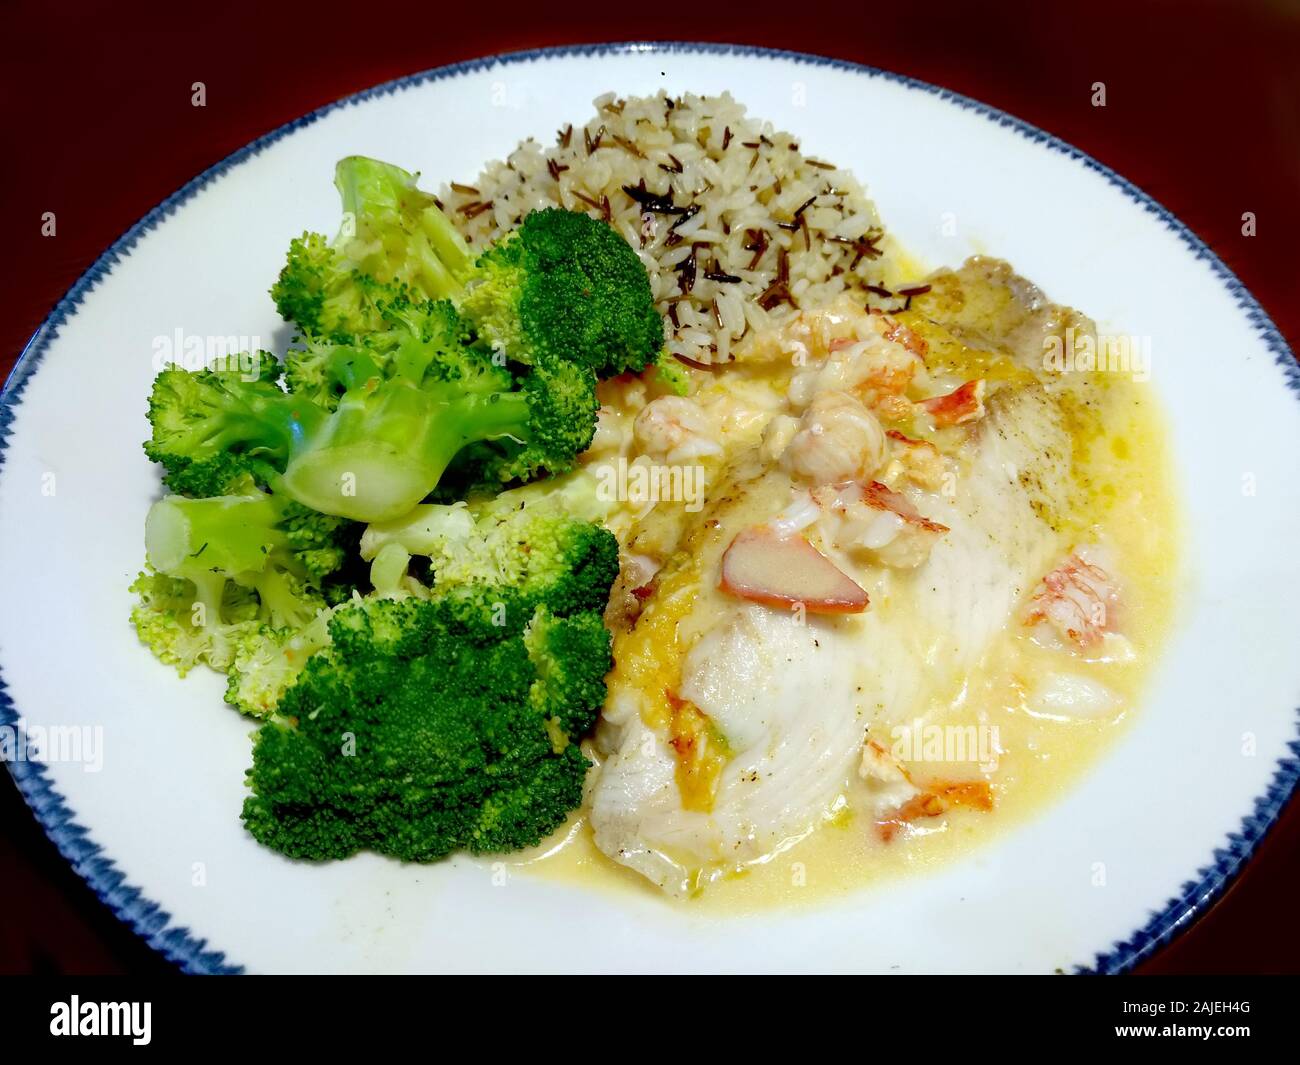 Cena de Marisco saludable con un lomo de bacalao, coronado con cangrejo y una salsa de mantequilla de ajo limón, arroz pilaf y brócoli cocido Foto de stock